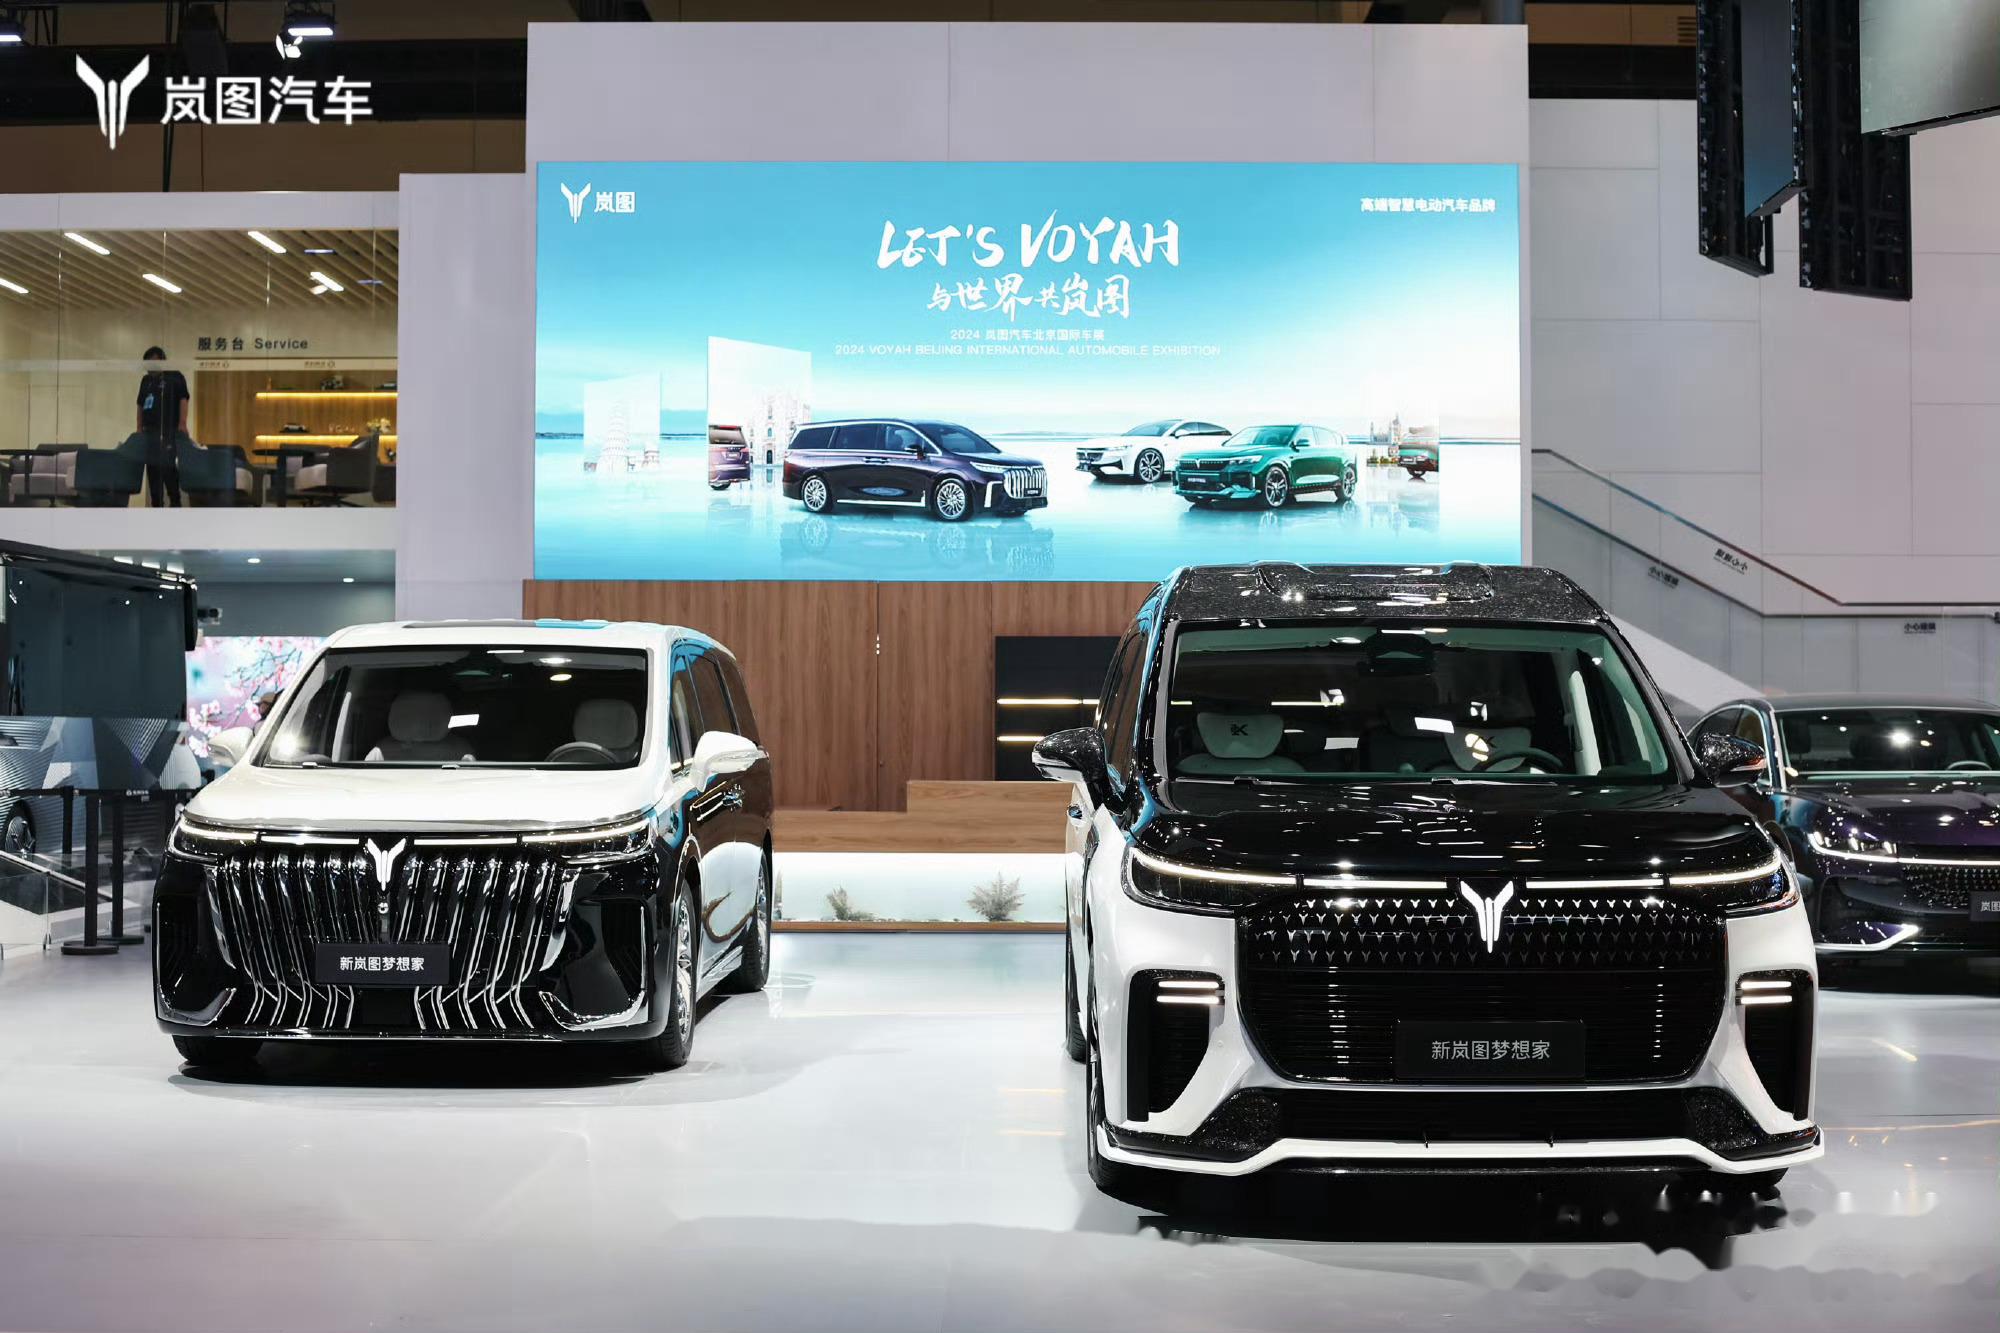 岚图汽车全系亮相北京车展 在最近一届的北京国际汽车展览会上,岚图